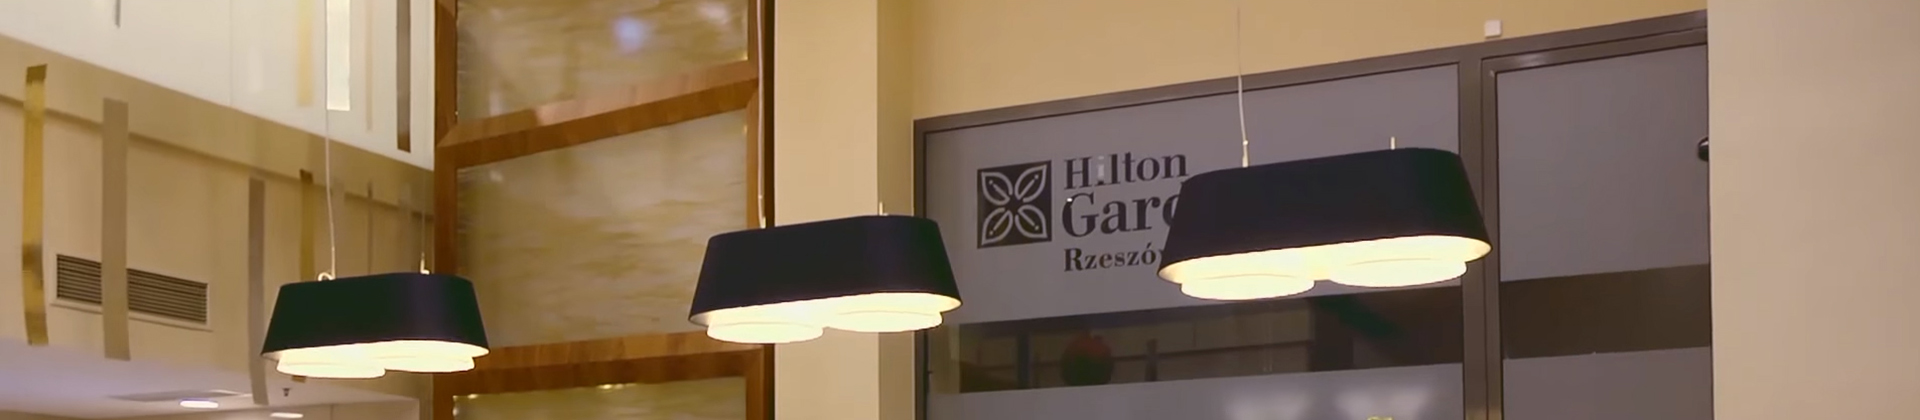 Hilton Garden Inn Rzeszow